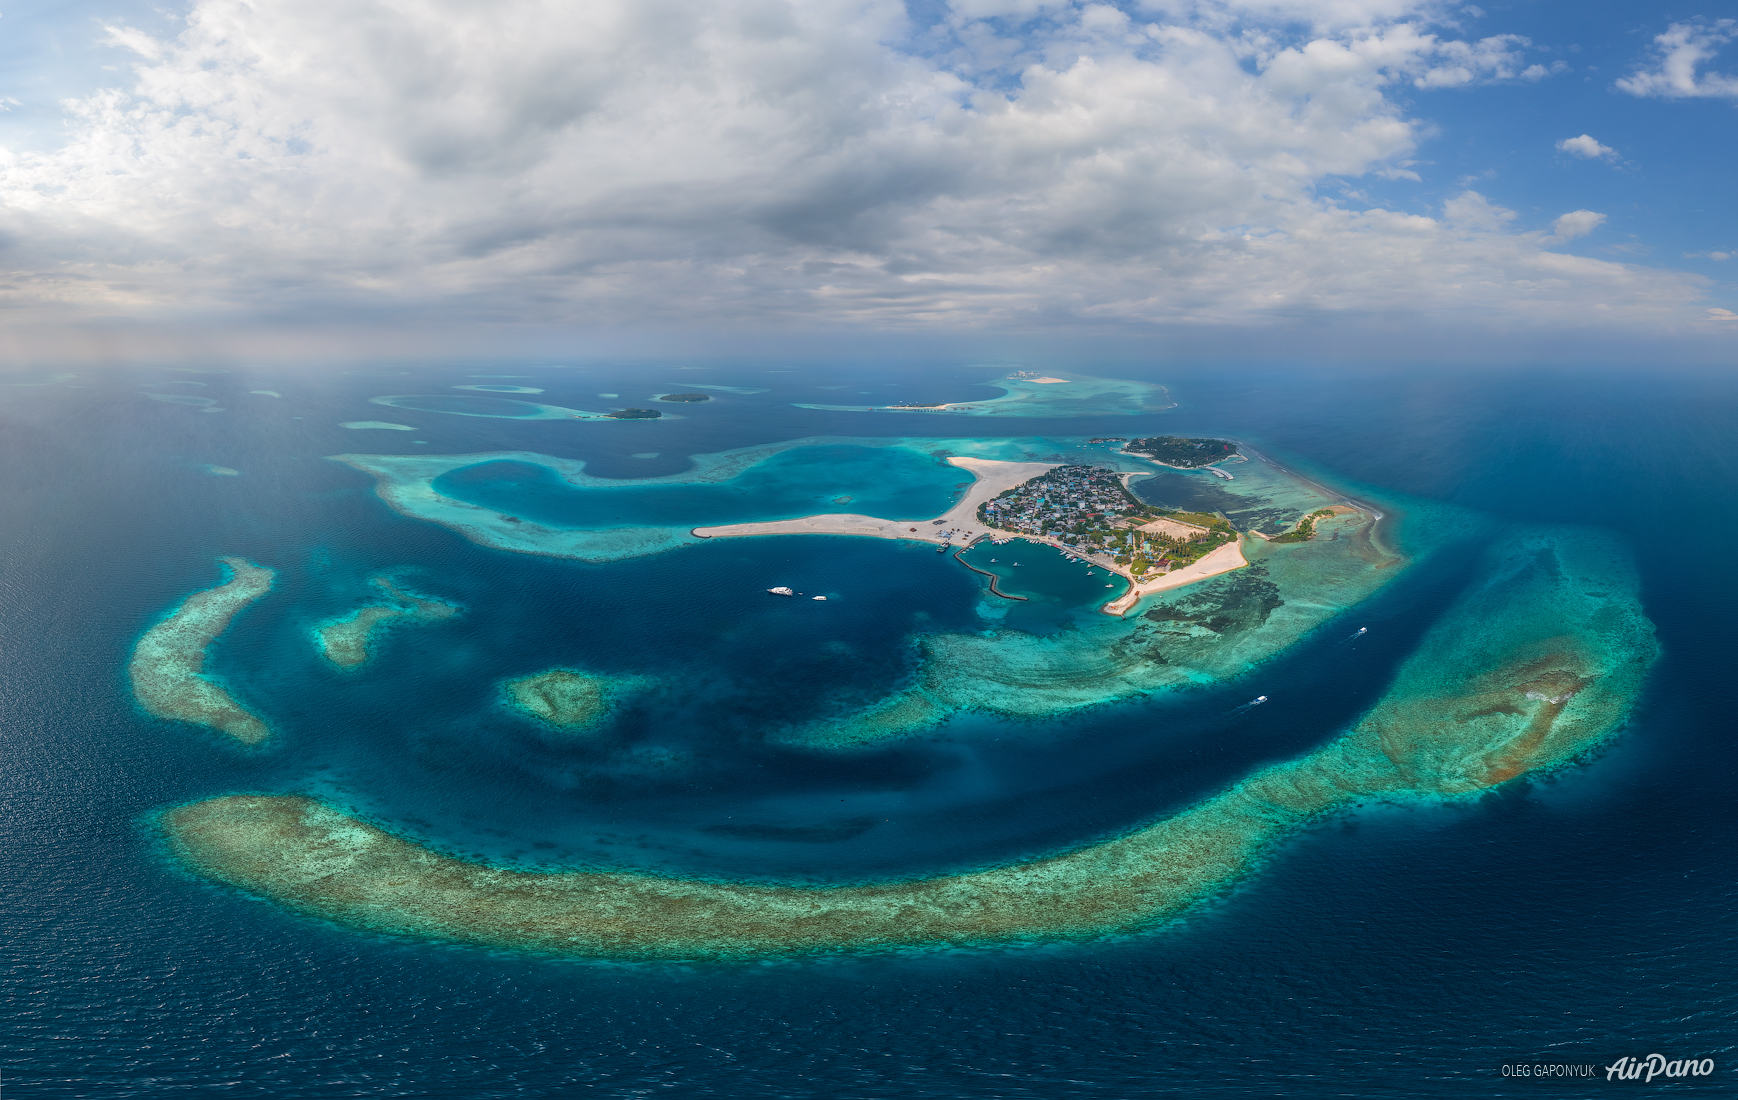 First ocean. Океаны 1. Остров Ангилья в океане. Союз океанских островов. Острова в океане панорамные фото.